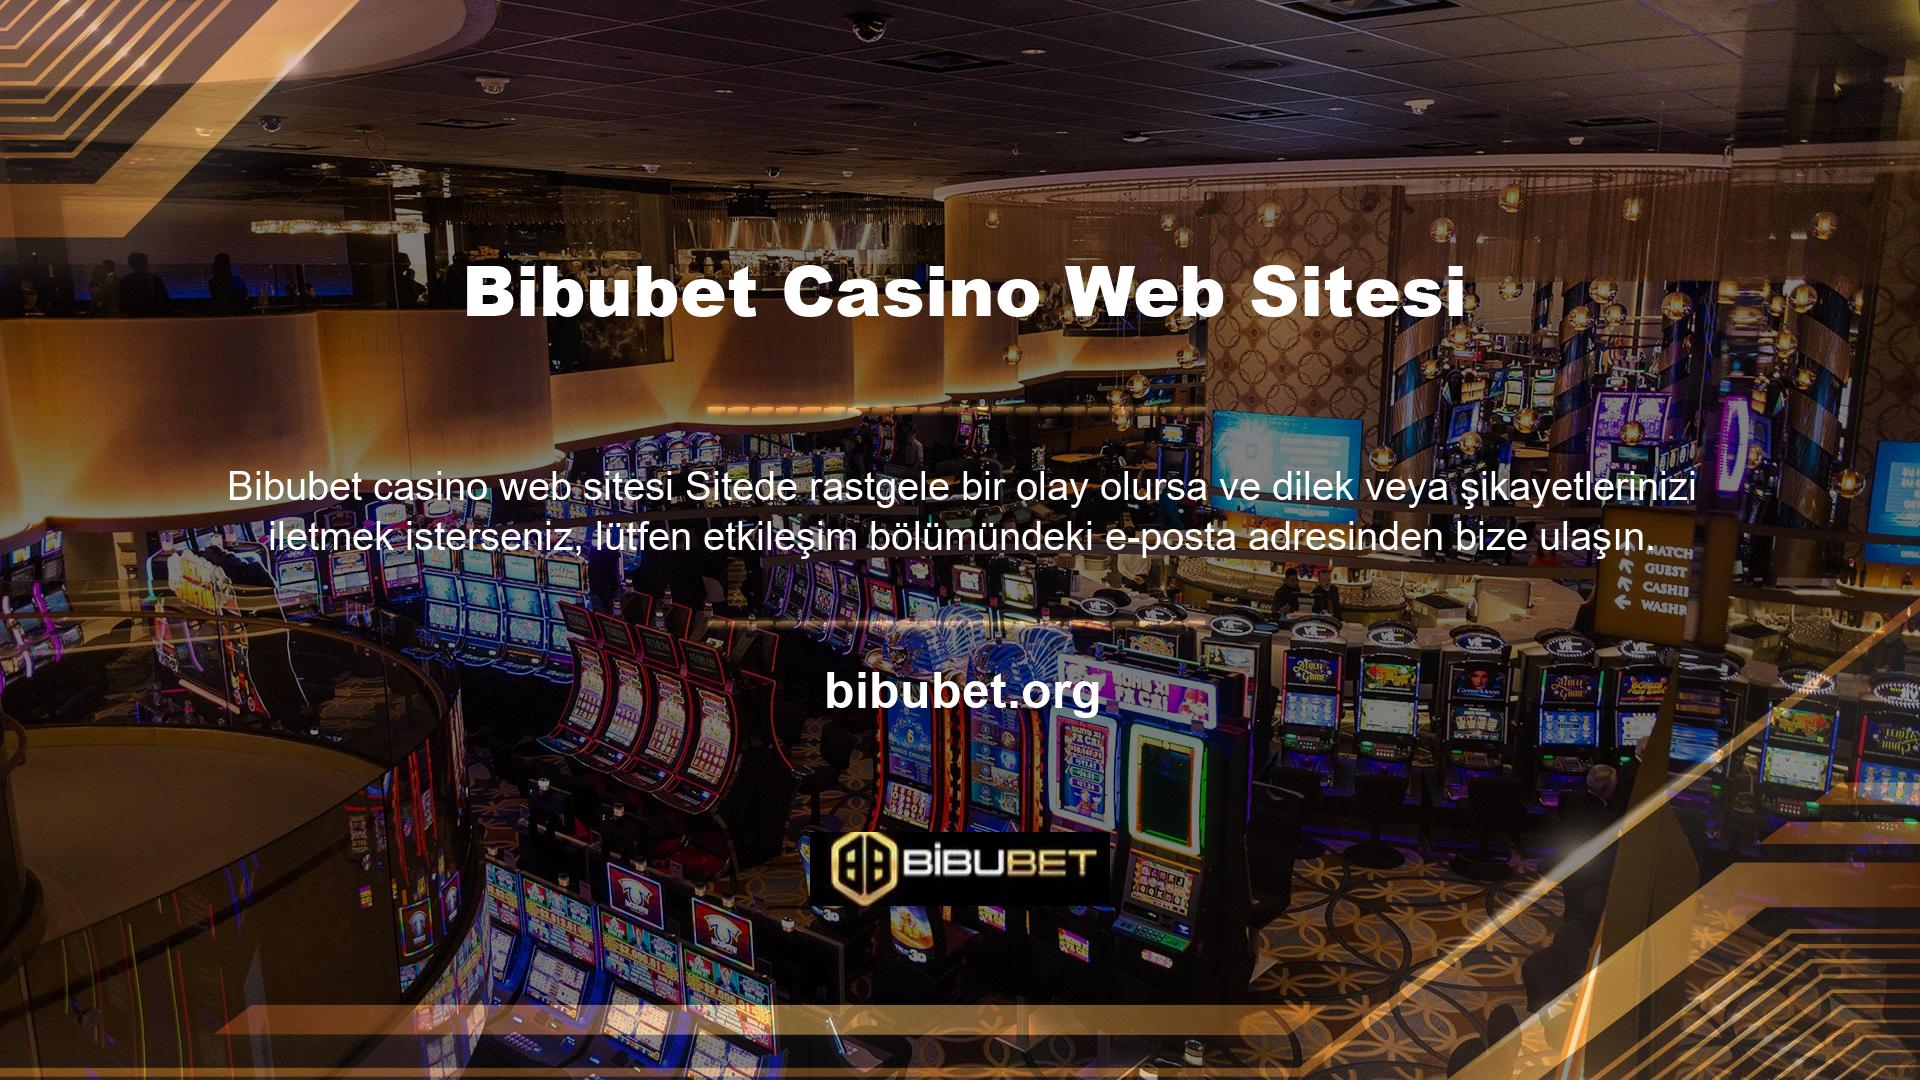 Profesyonel ve deneyimli bahis sitesi kadrosu ile Bibubet, kullanıcıların sorunlarına çözüm bulmalarına yardımcı olmak için 7/24 destek vermektedir